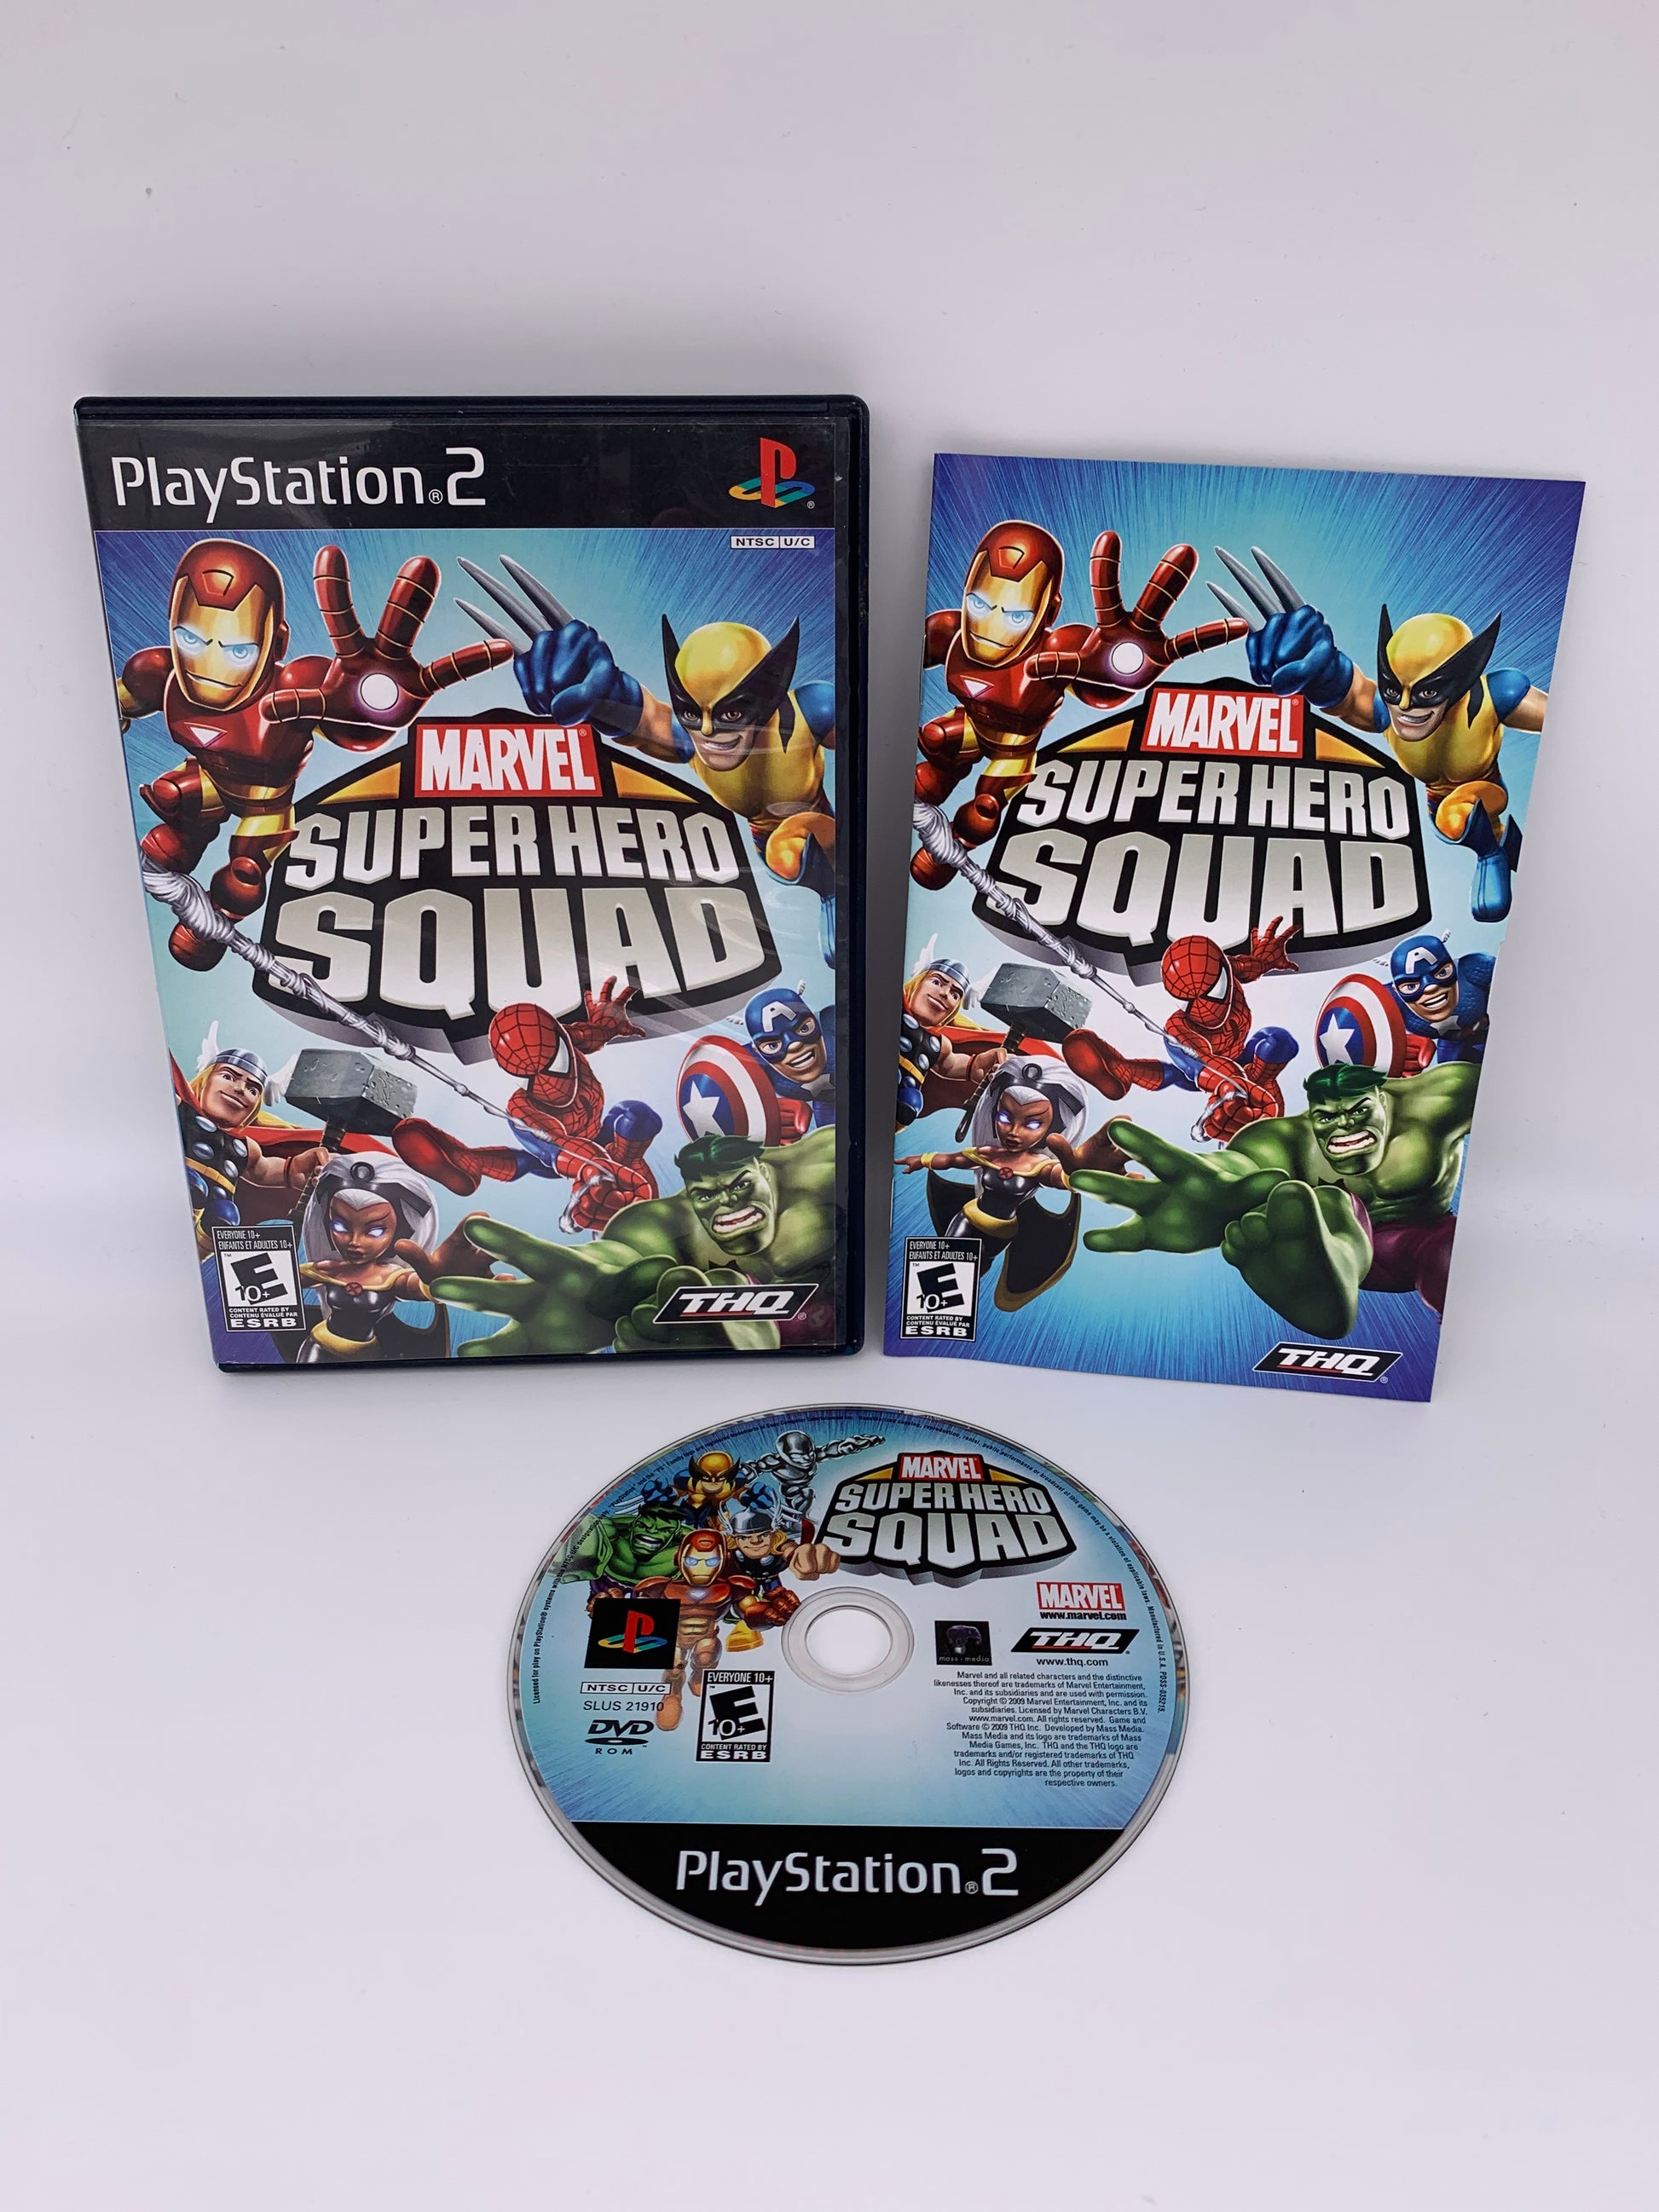 PiXEL-RETRO.COM : SONY PLAYSTATION 2 (PS2) COMPLET CIB BOX MANUAL GAME NTSC MARVE SUPER HERO SQUAD